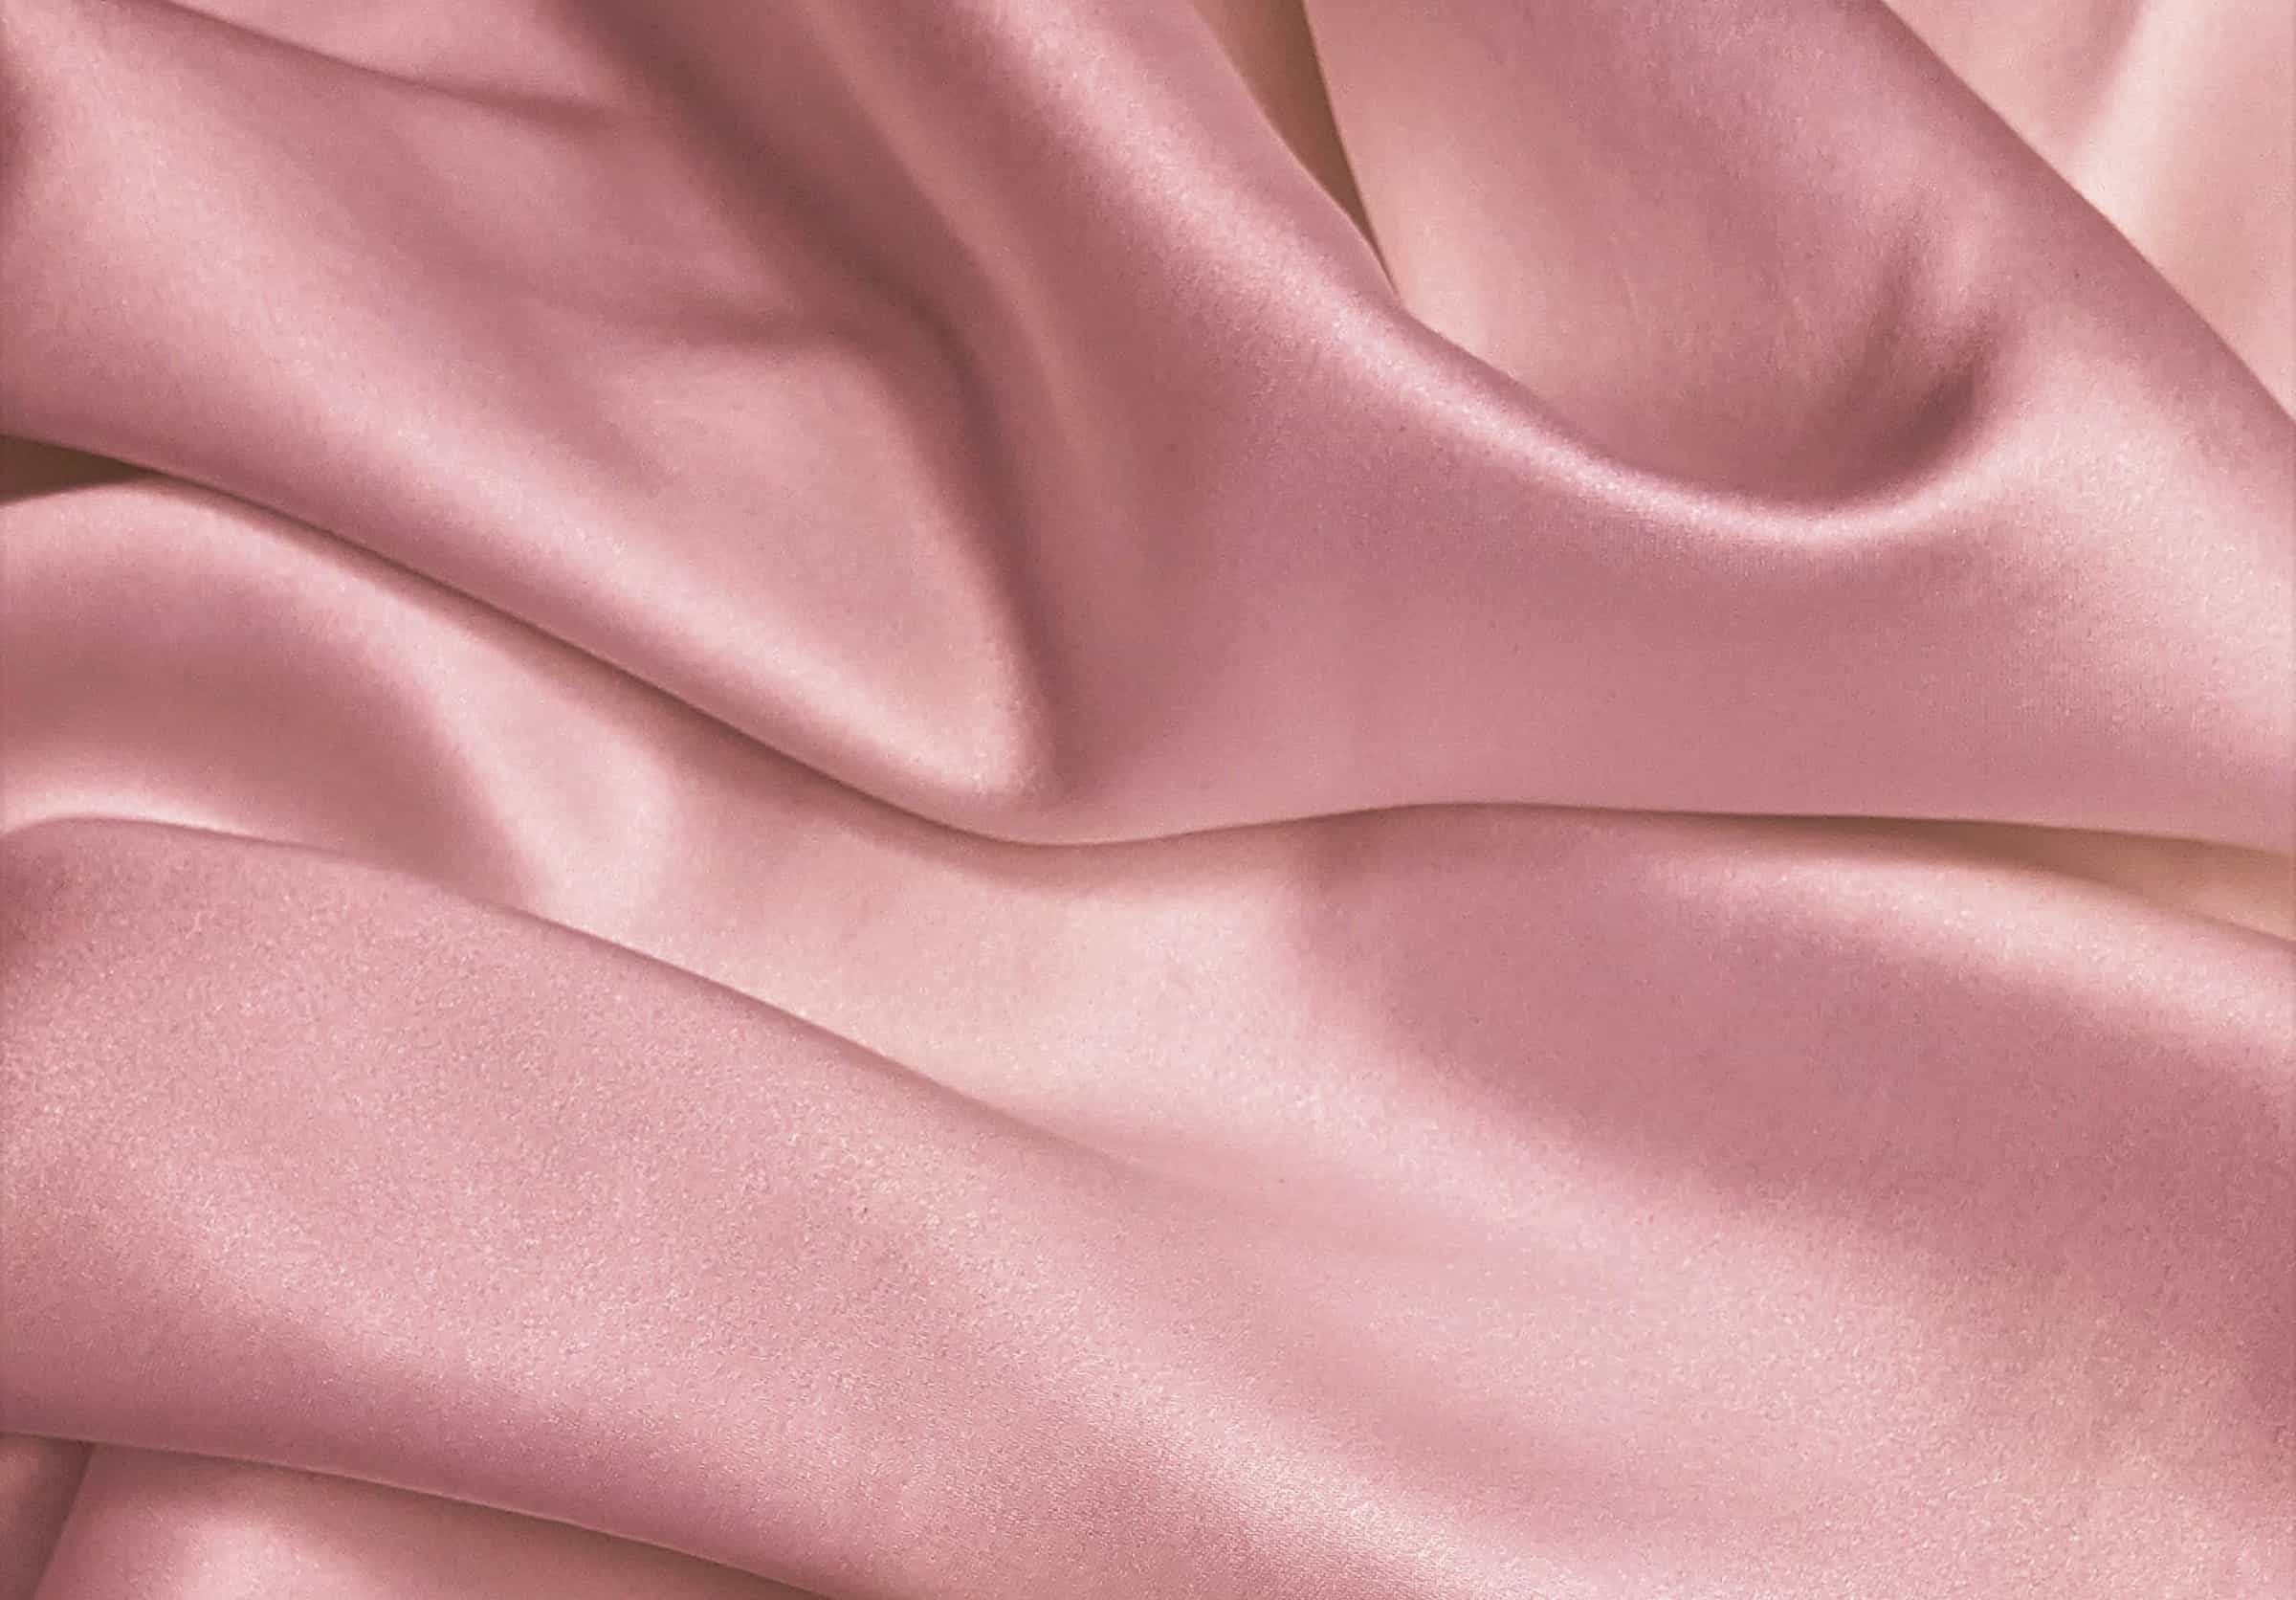 pink velvet fabric